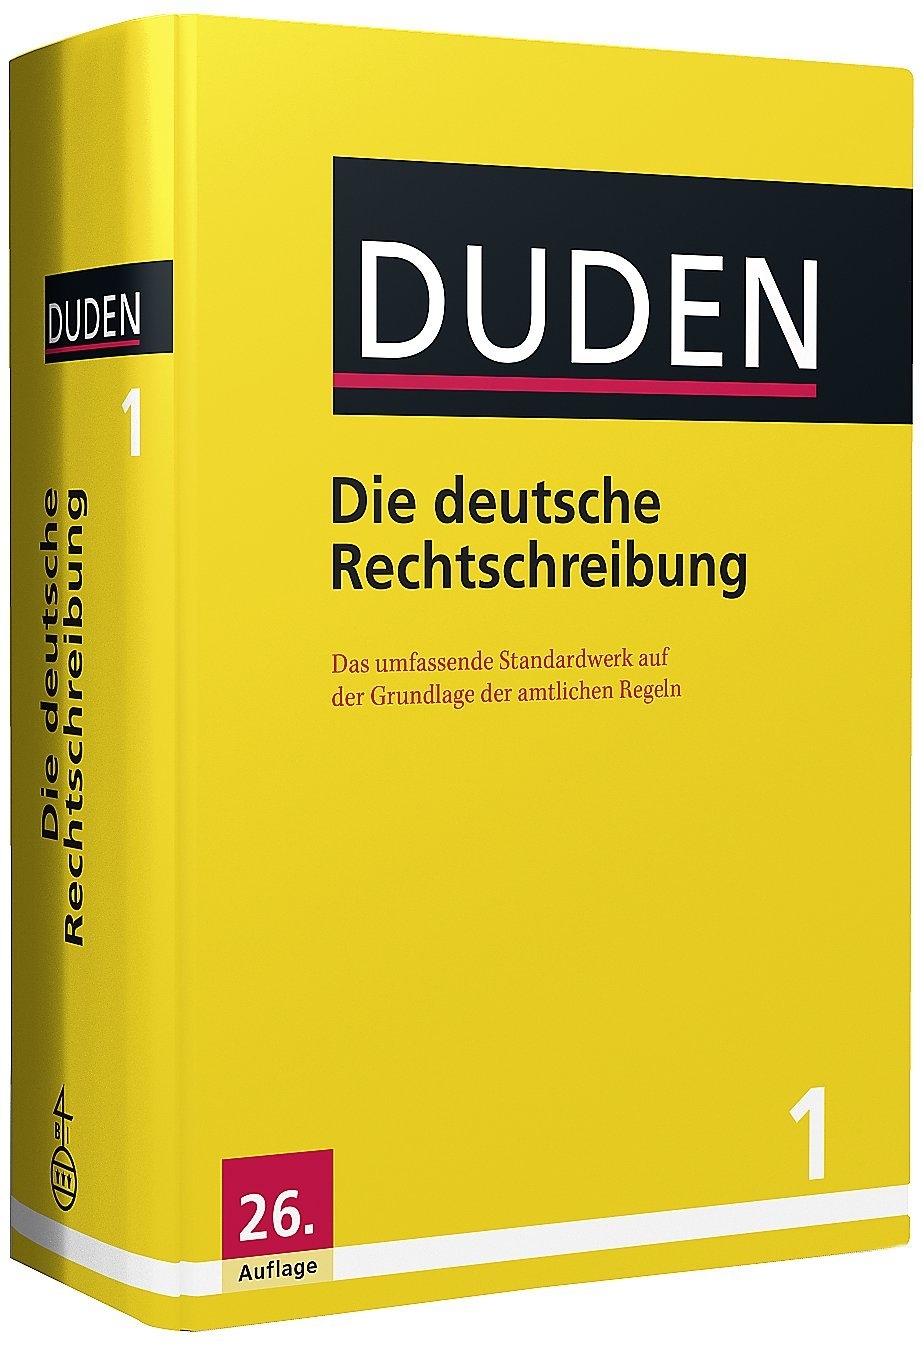 DUDEN Band 1 783411040179 Die Deutsche Rechtschreibung